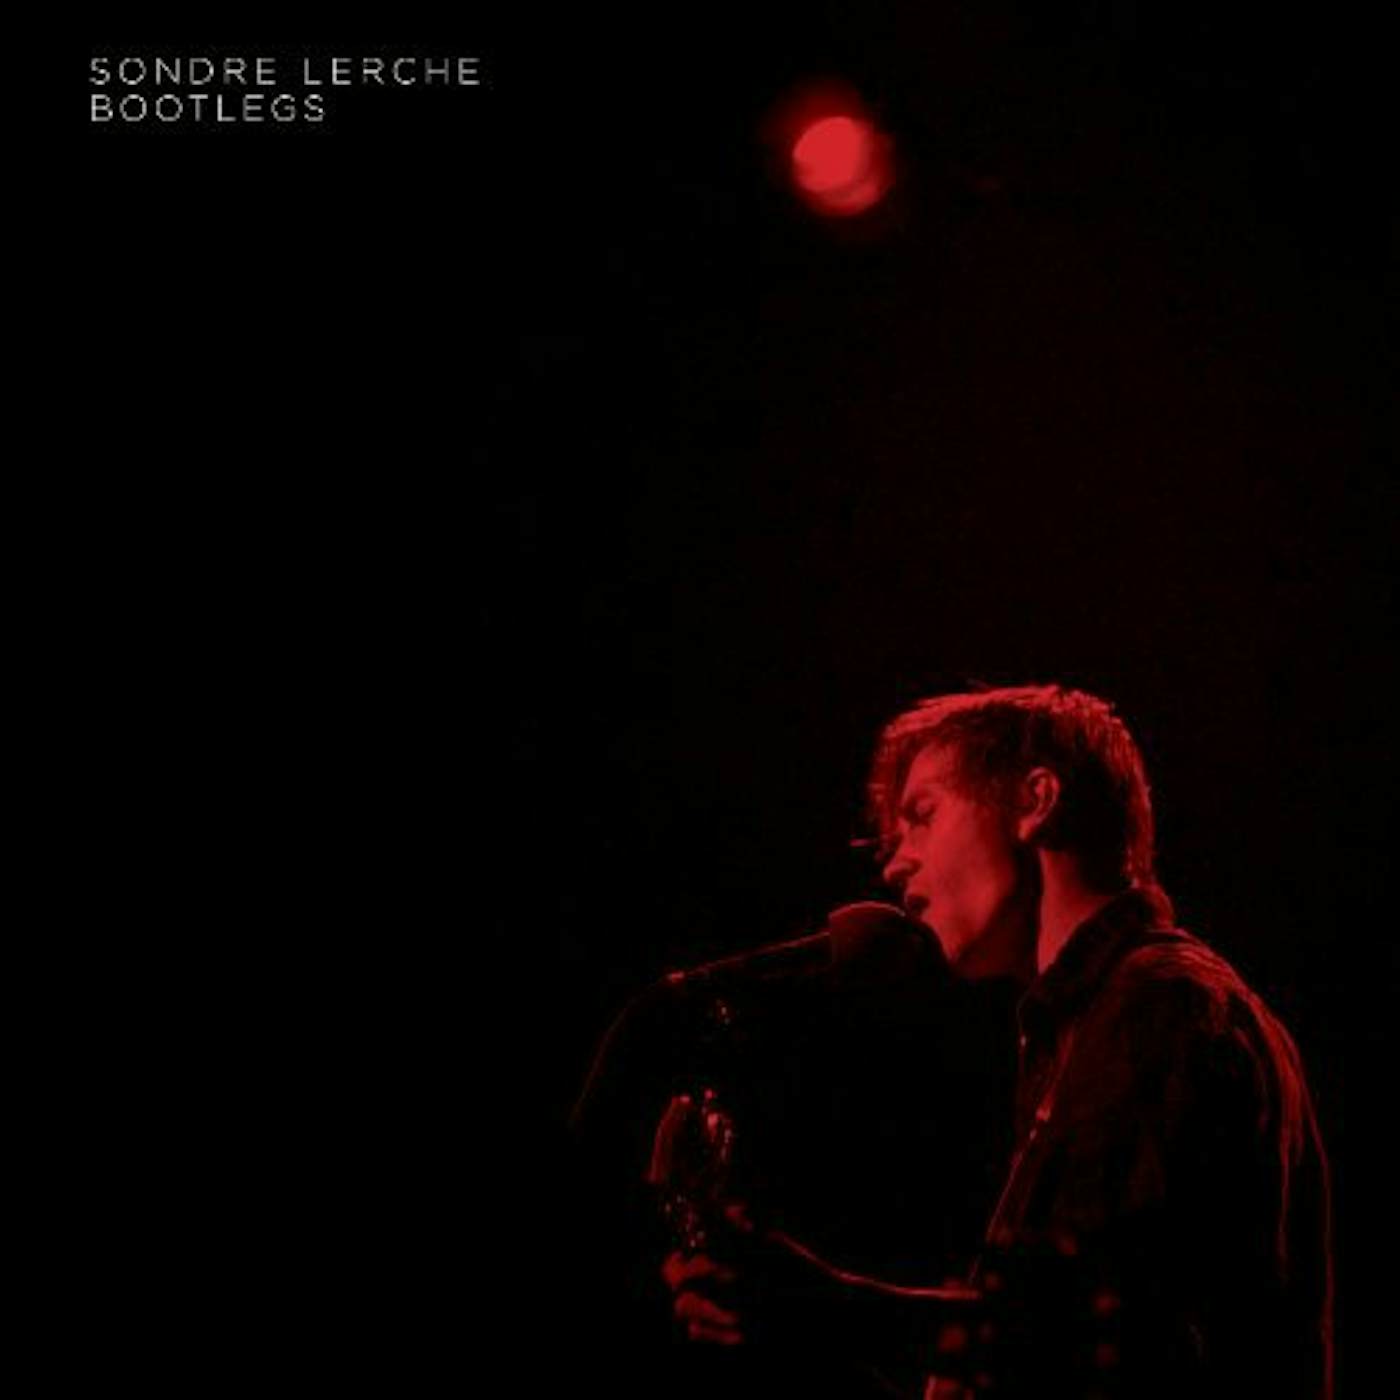 Sondre Lerche Bootlegs Vinyl Record